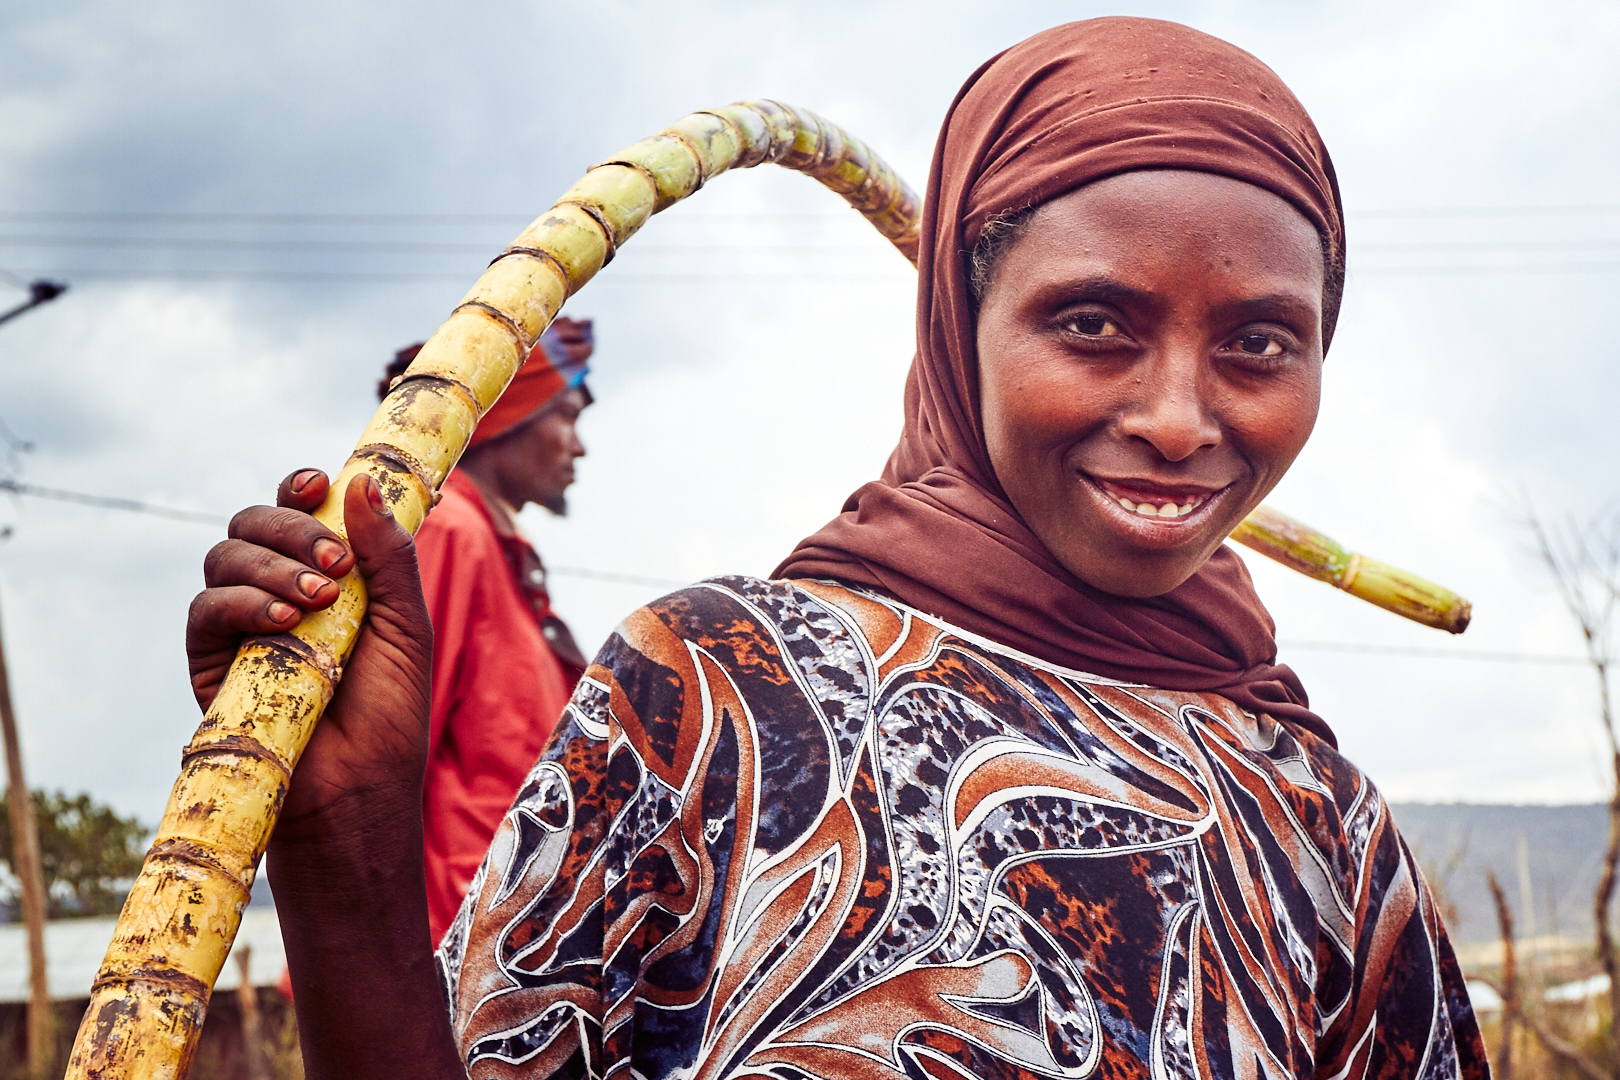 Pvk Photo | Photographe Professionnel | Portrait d'une femme ethiopienne tenant une canne à sucre